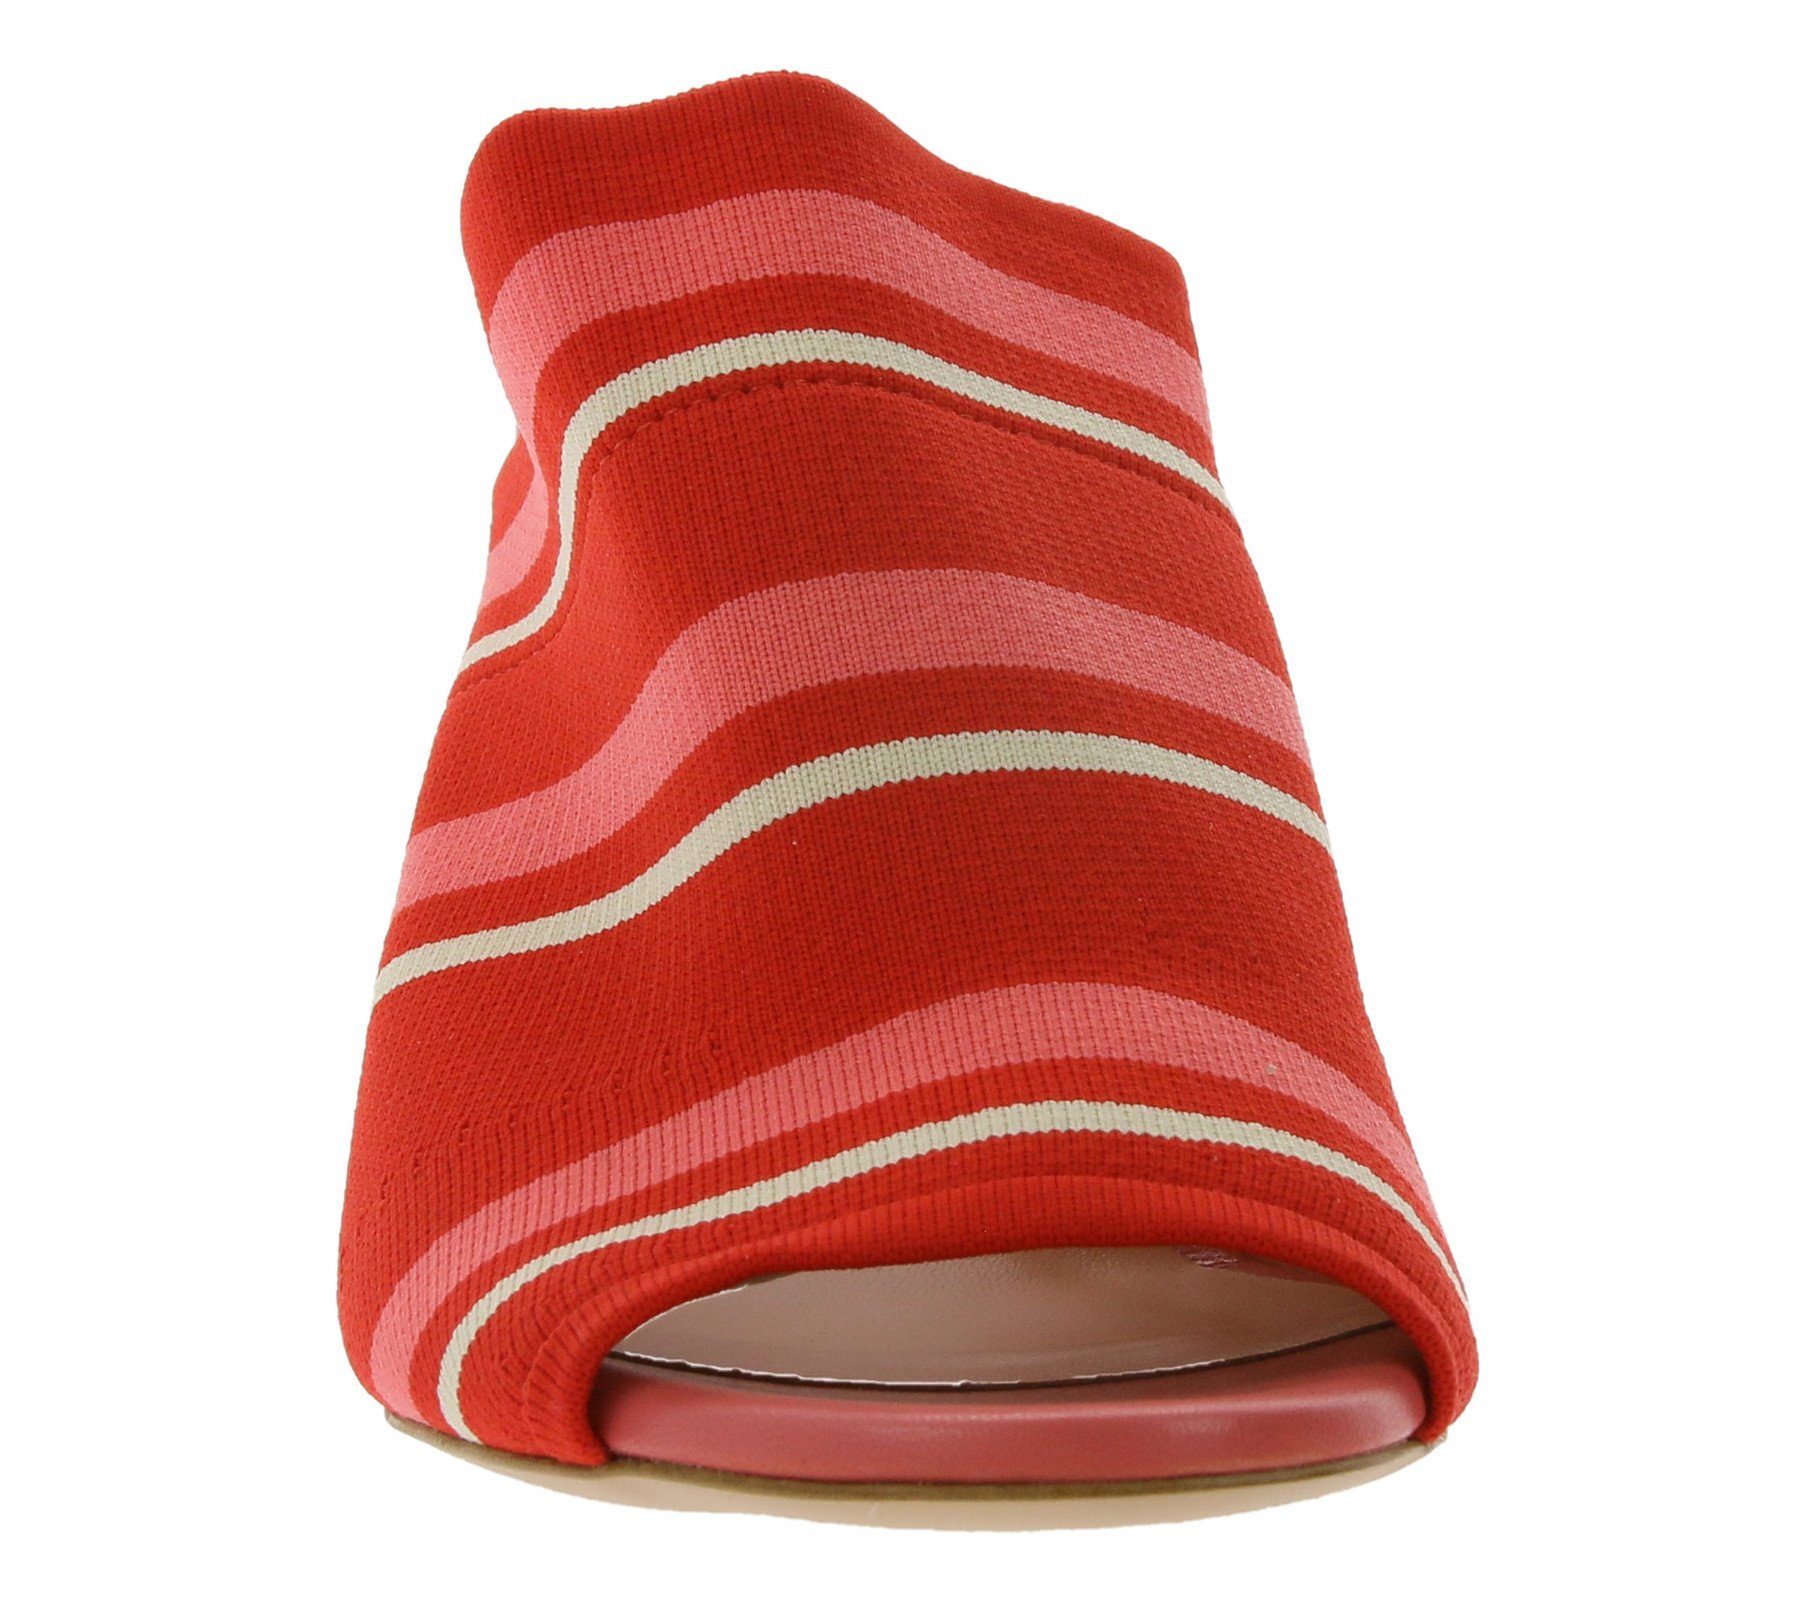 Made gestreifte Damen MARC Marc CAIN in Absatz-Pantoletten Italy Pumps Rot/Rosa Outdoorschuh Cain Absatz-Schuhe